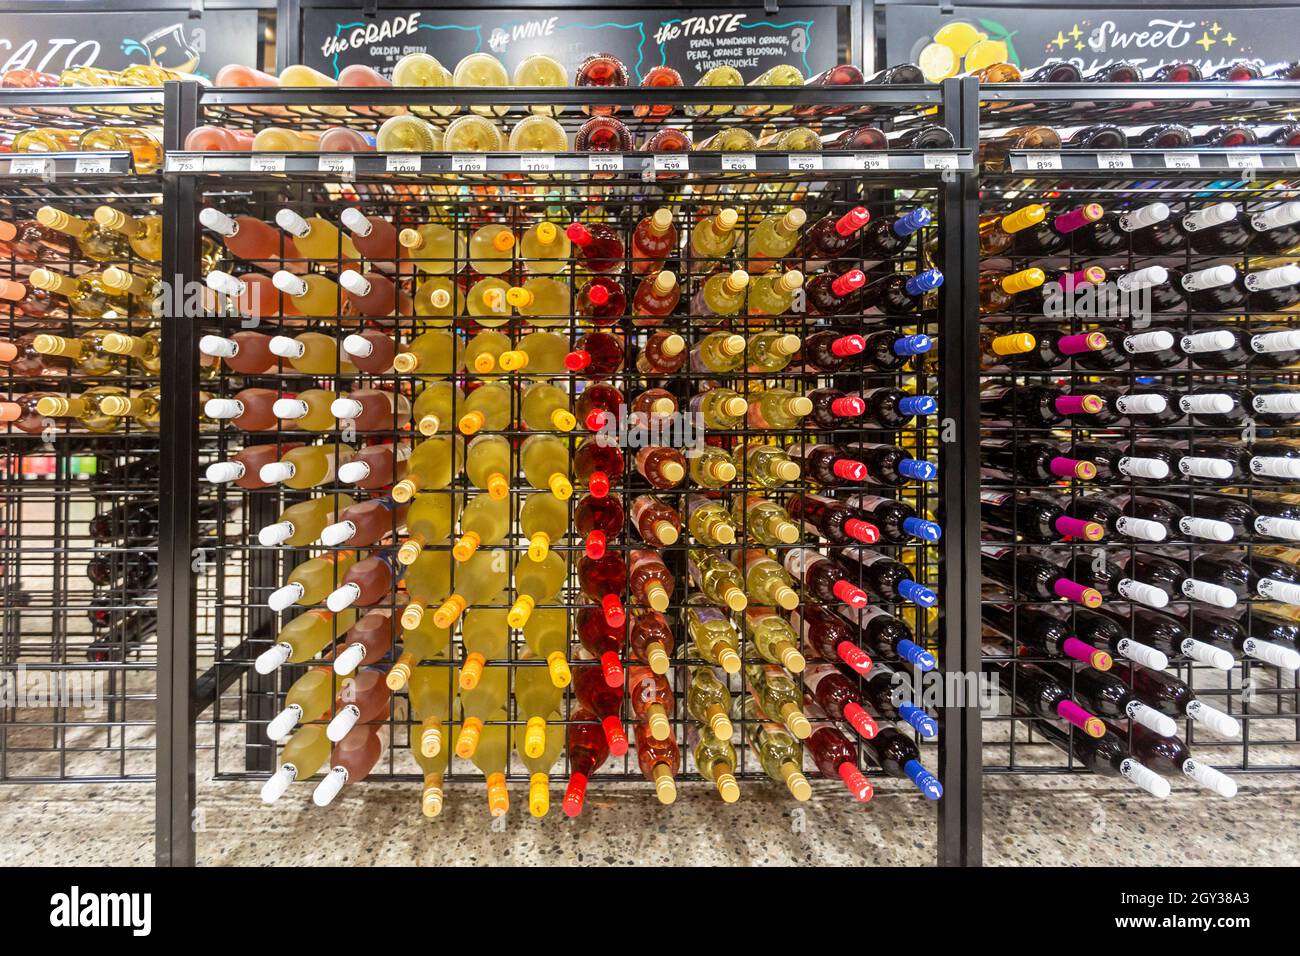 Detroit, Michigan - bouteilles de vin au Rivertown Market, un supermarché plus petit exploité par la chaîne Meijer dans le centre-ville de Detroit.Le magasin est o Banque D'Images